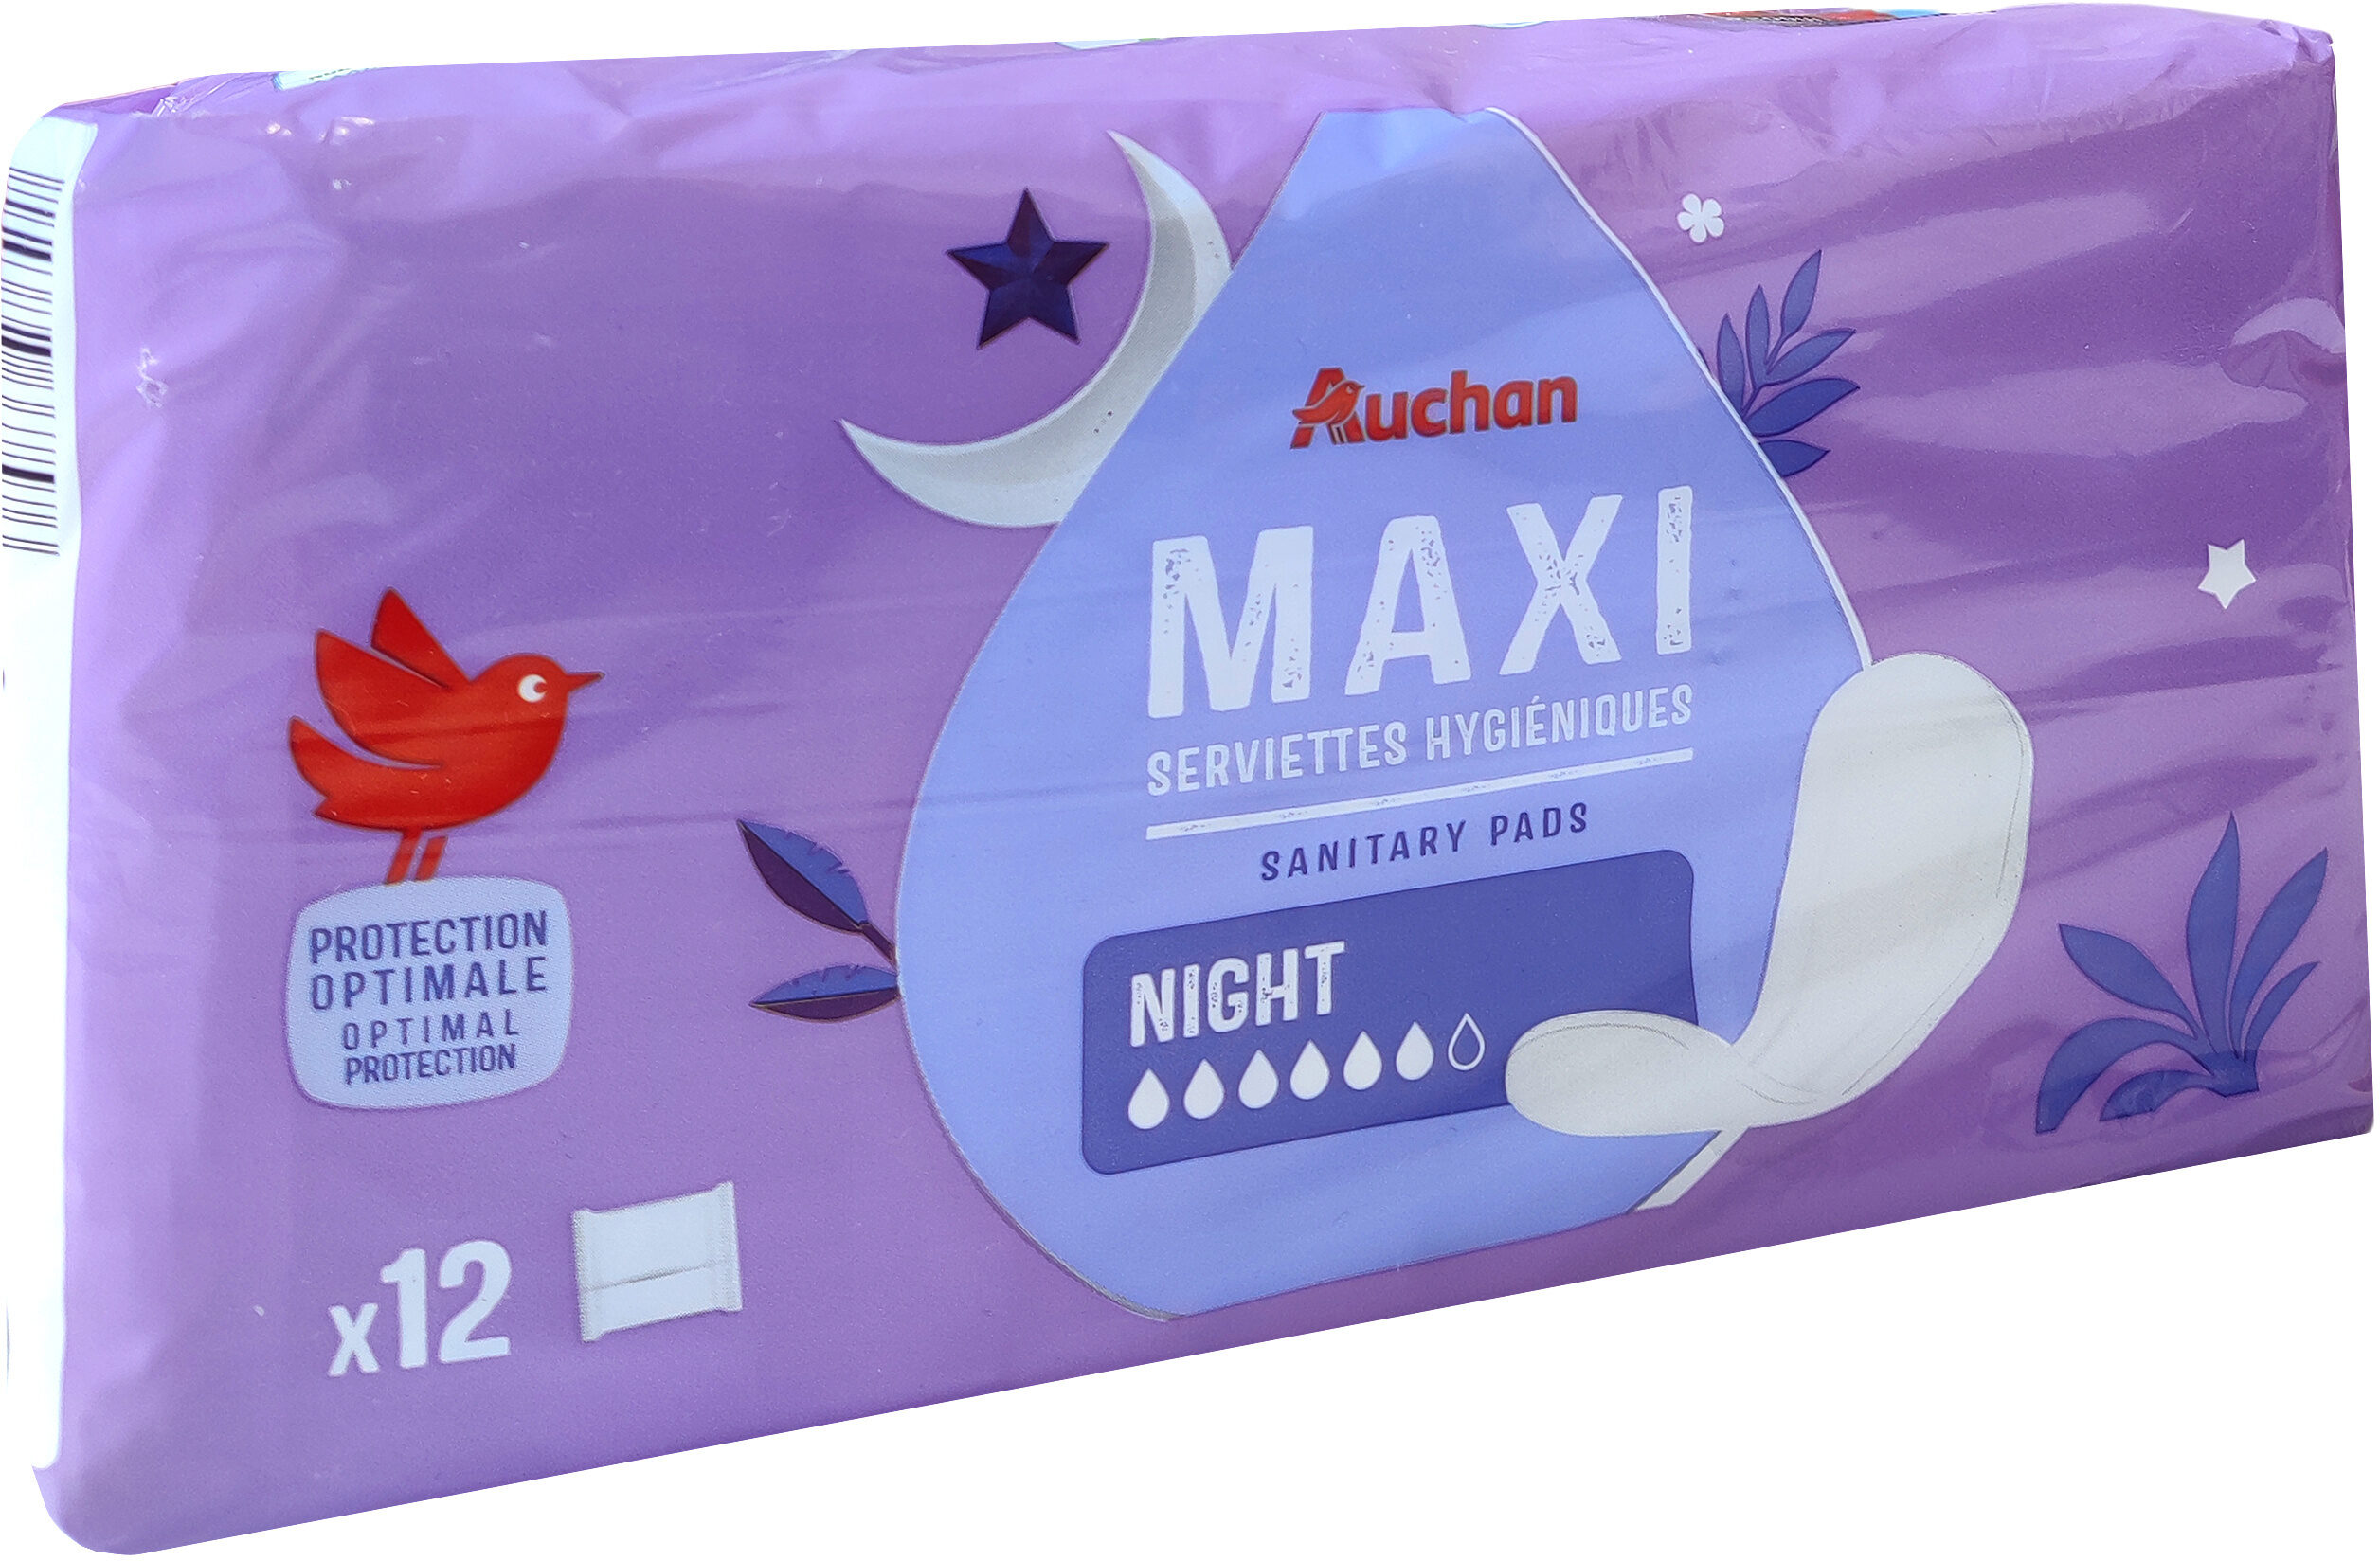 Serviettes hygiéniques Maxi Night x12 - Produit - fr